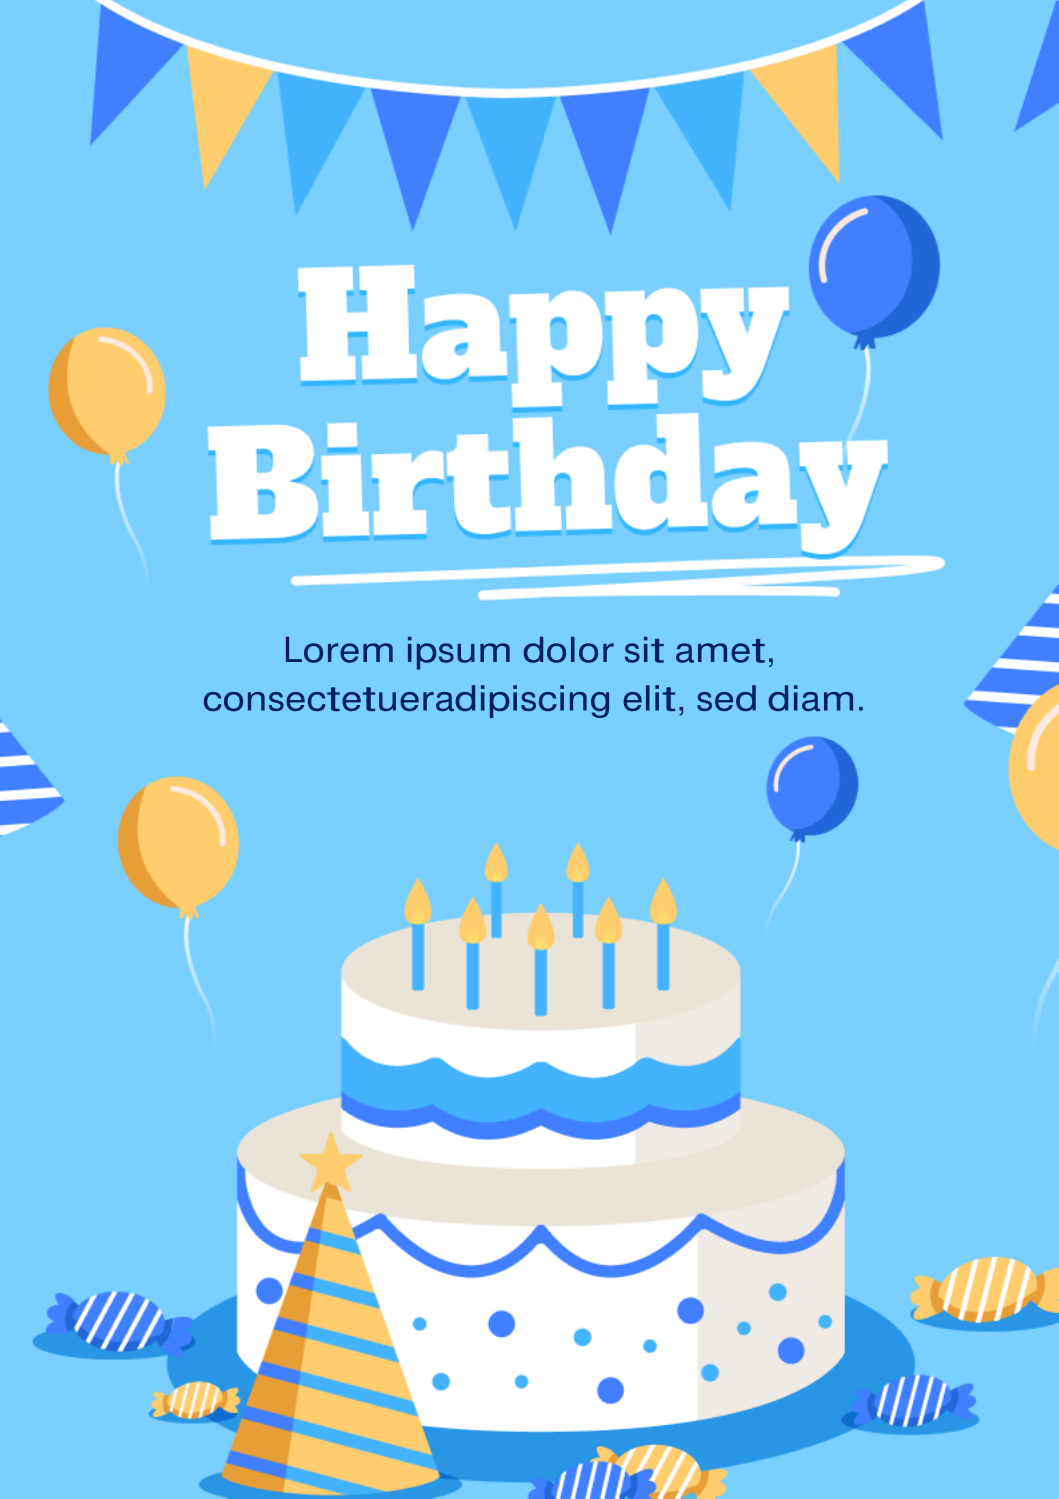 Birthday Wish Card